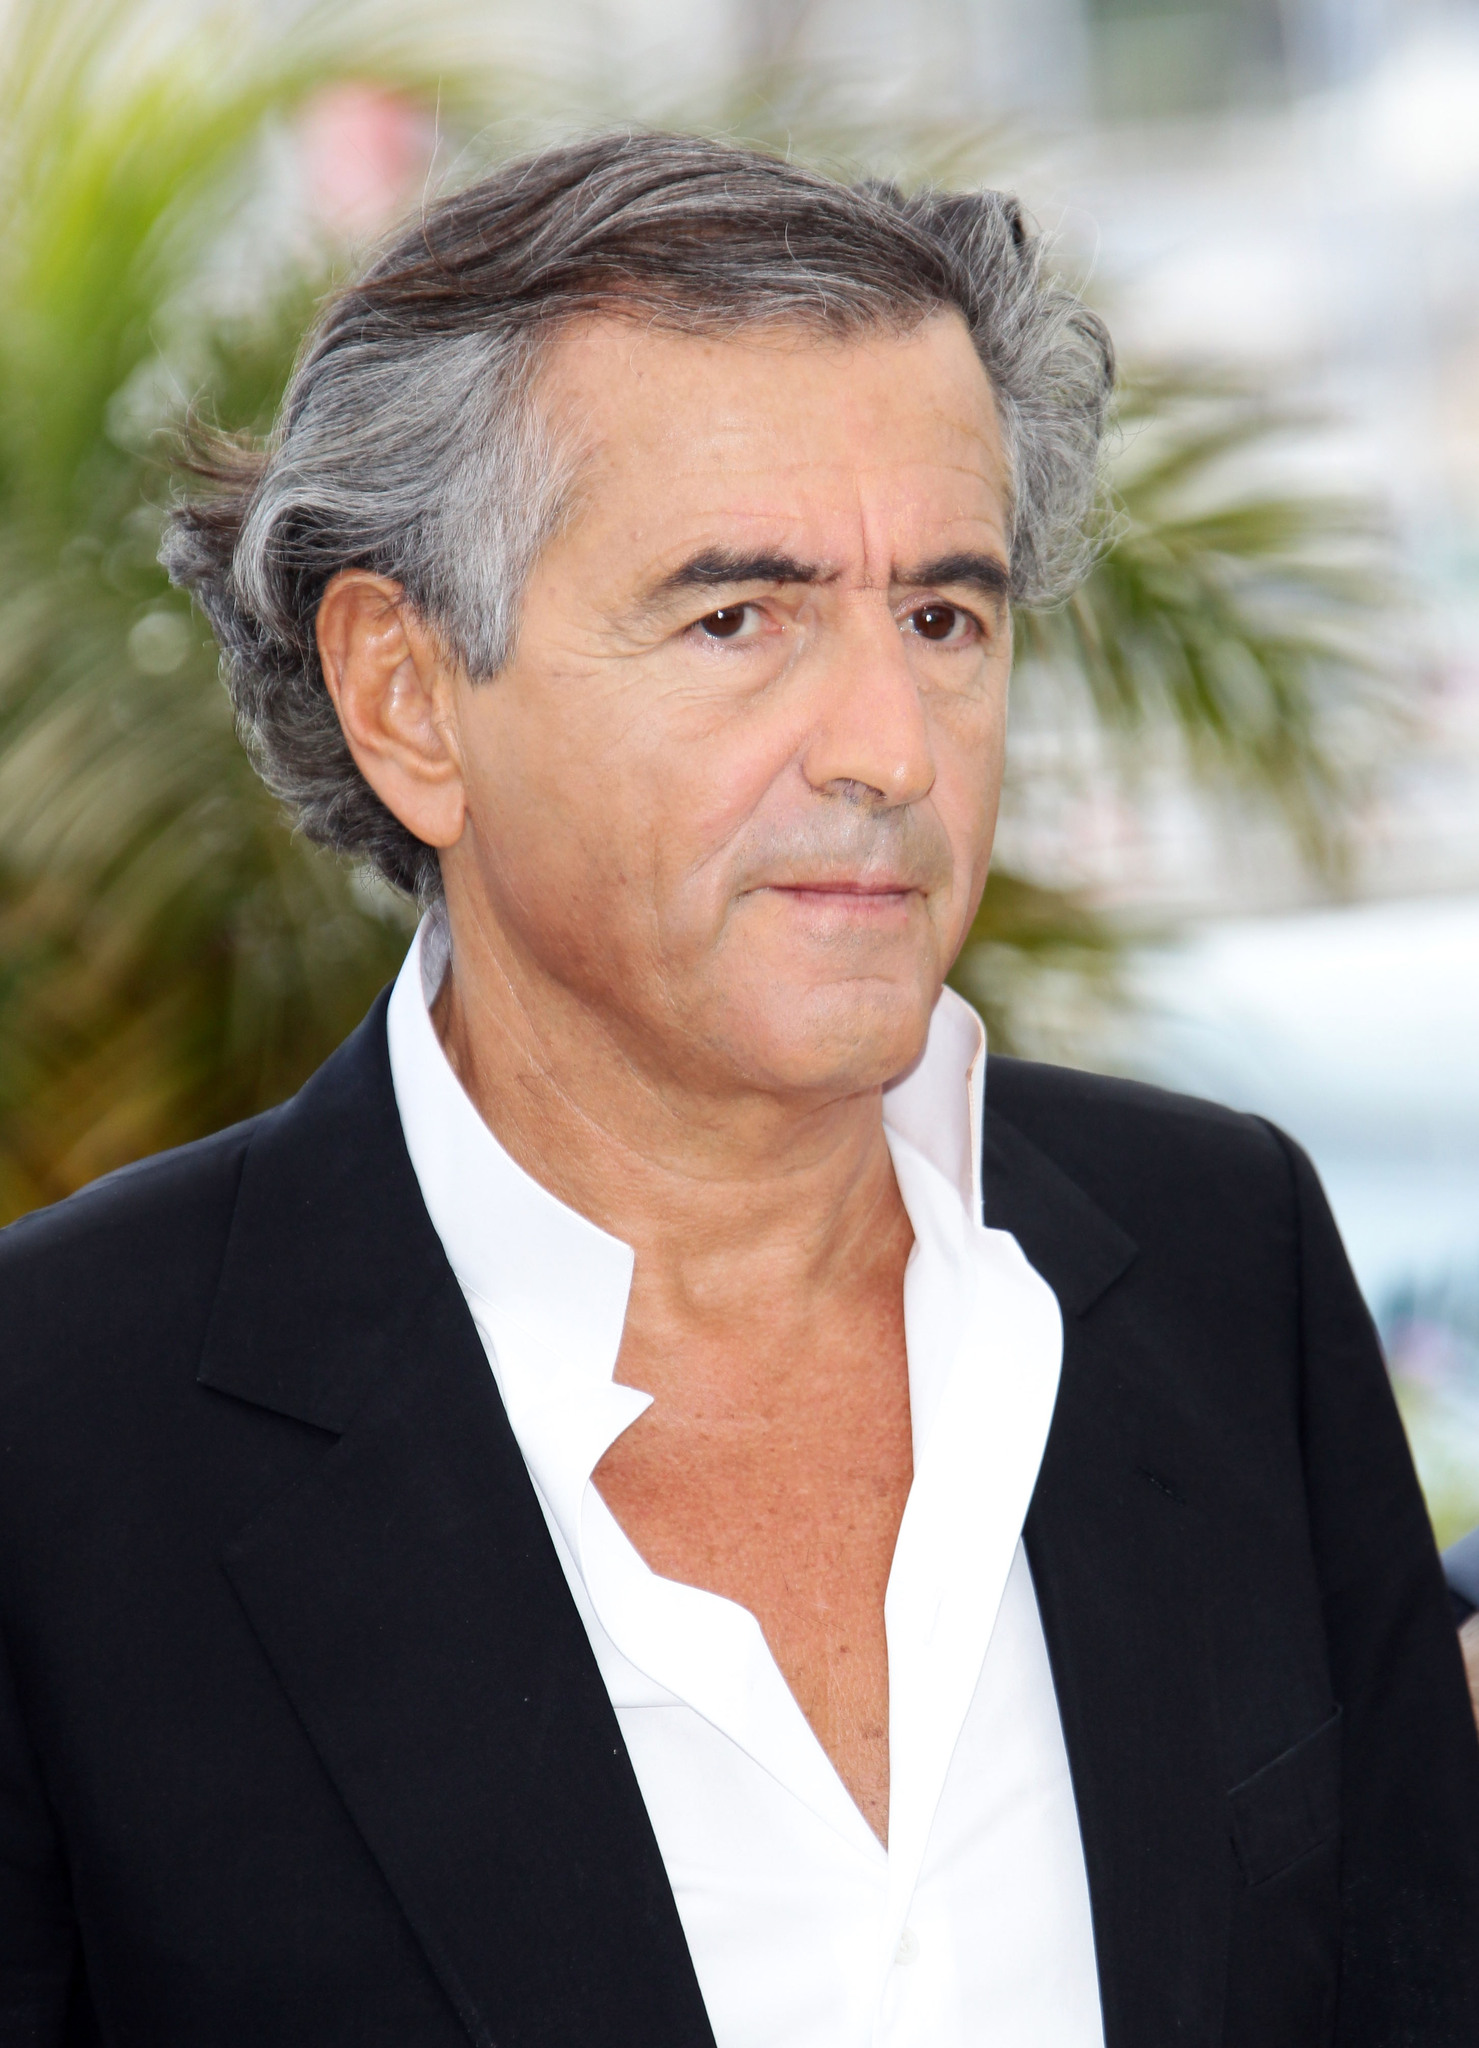 Bernard-Henri Lévy at event of Le serment de Tobrouk (2012)